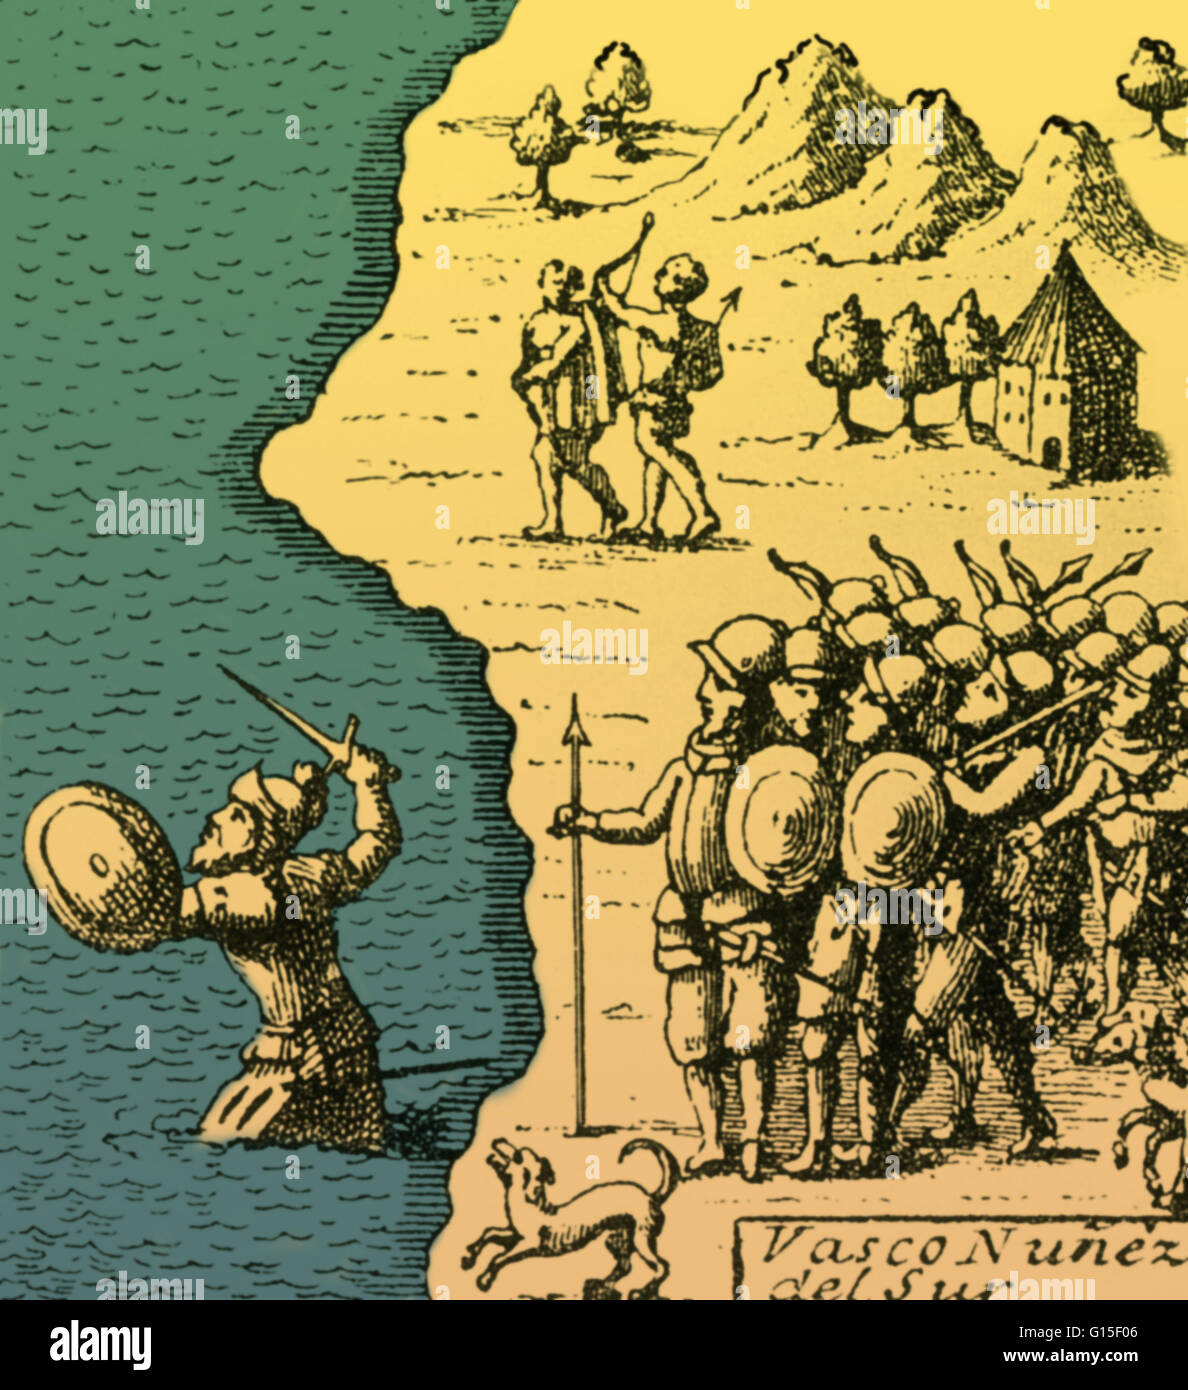 Vasco Núñez de Balboa (1474 - 15 janvier 1519) était un explorateur espagnol, gouverneur, et conquistador. Le Balboa est surtout connu pour avoir traversé l'Isthme de Panama à l'océan Pacifique en 1513. Ici il est vu en agitant son épée, pataugez dans le Pacifique, shou Banque D'Images